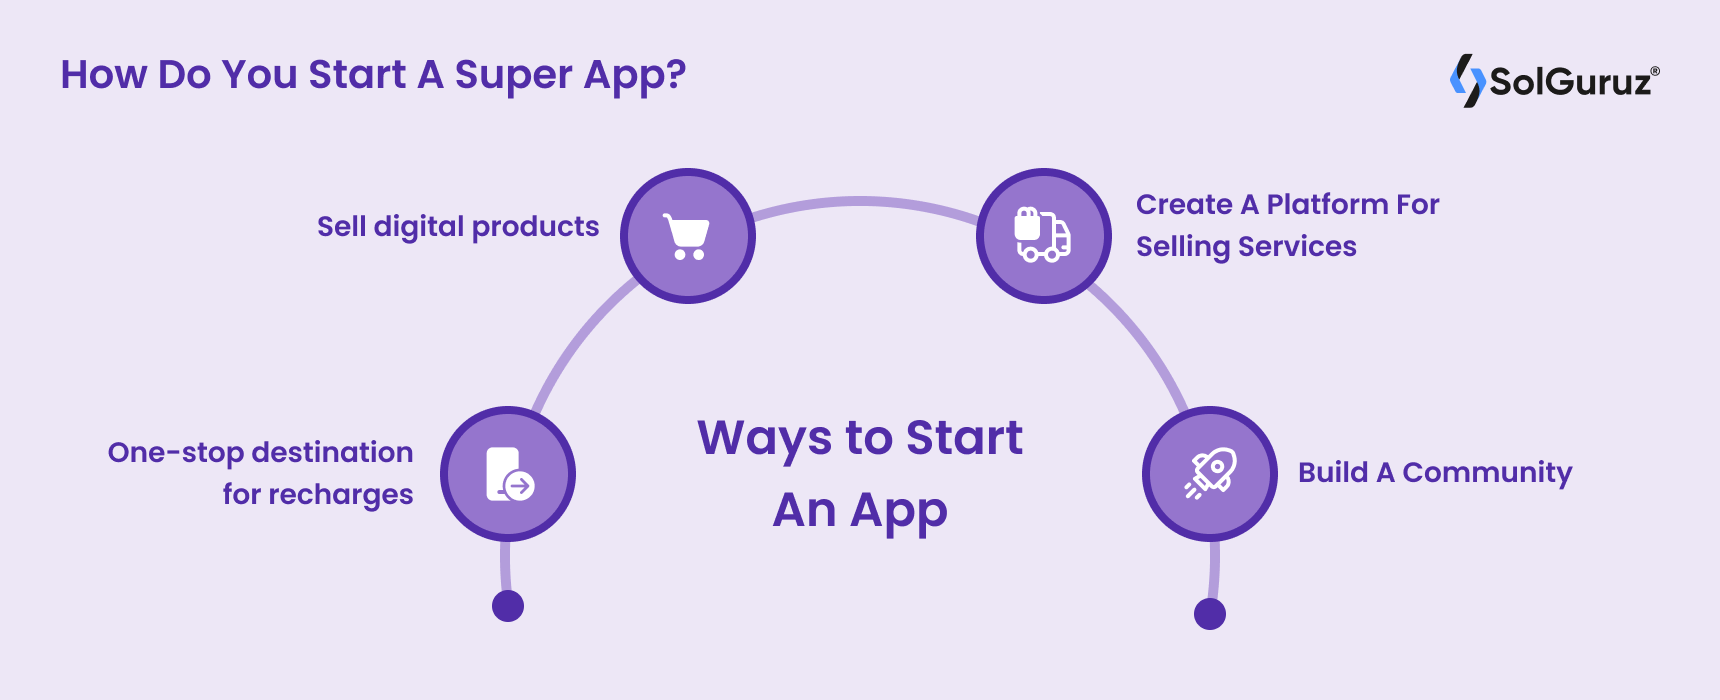 How Do You Start A Super App Development